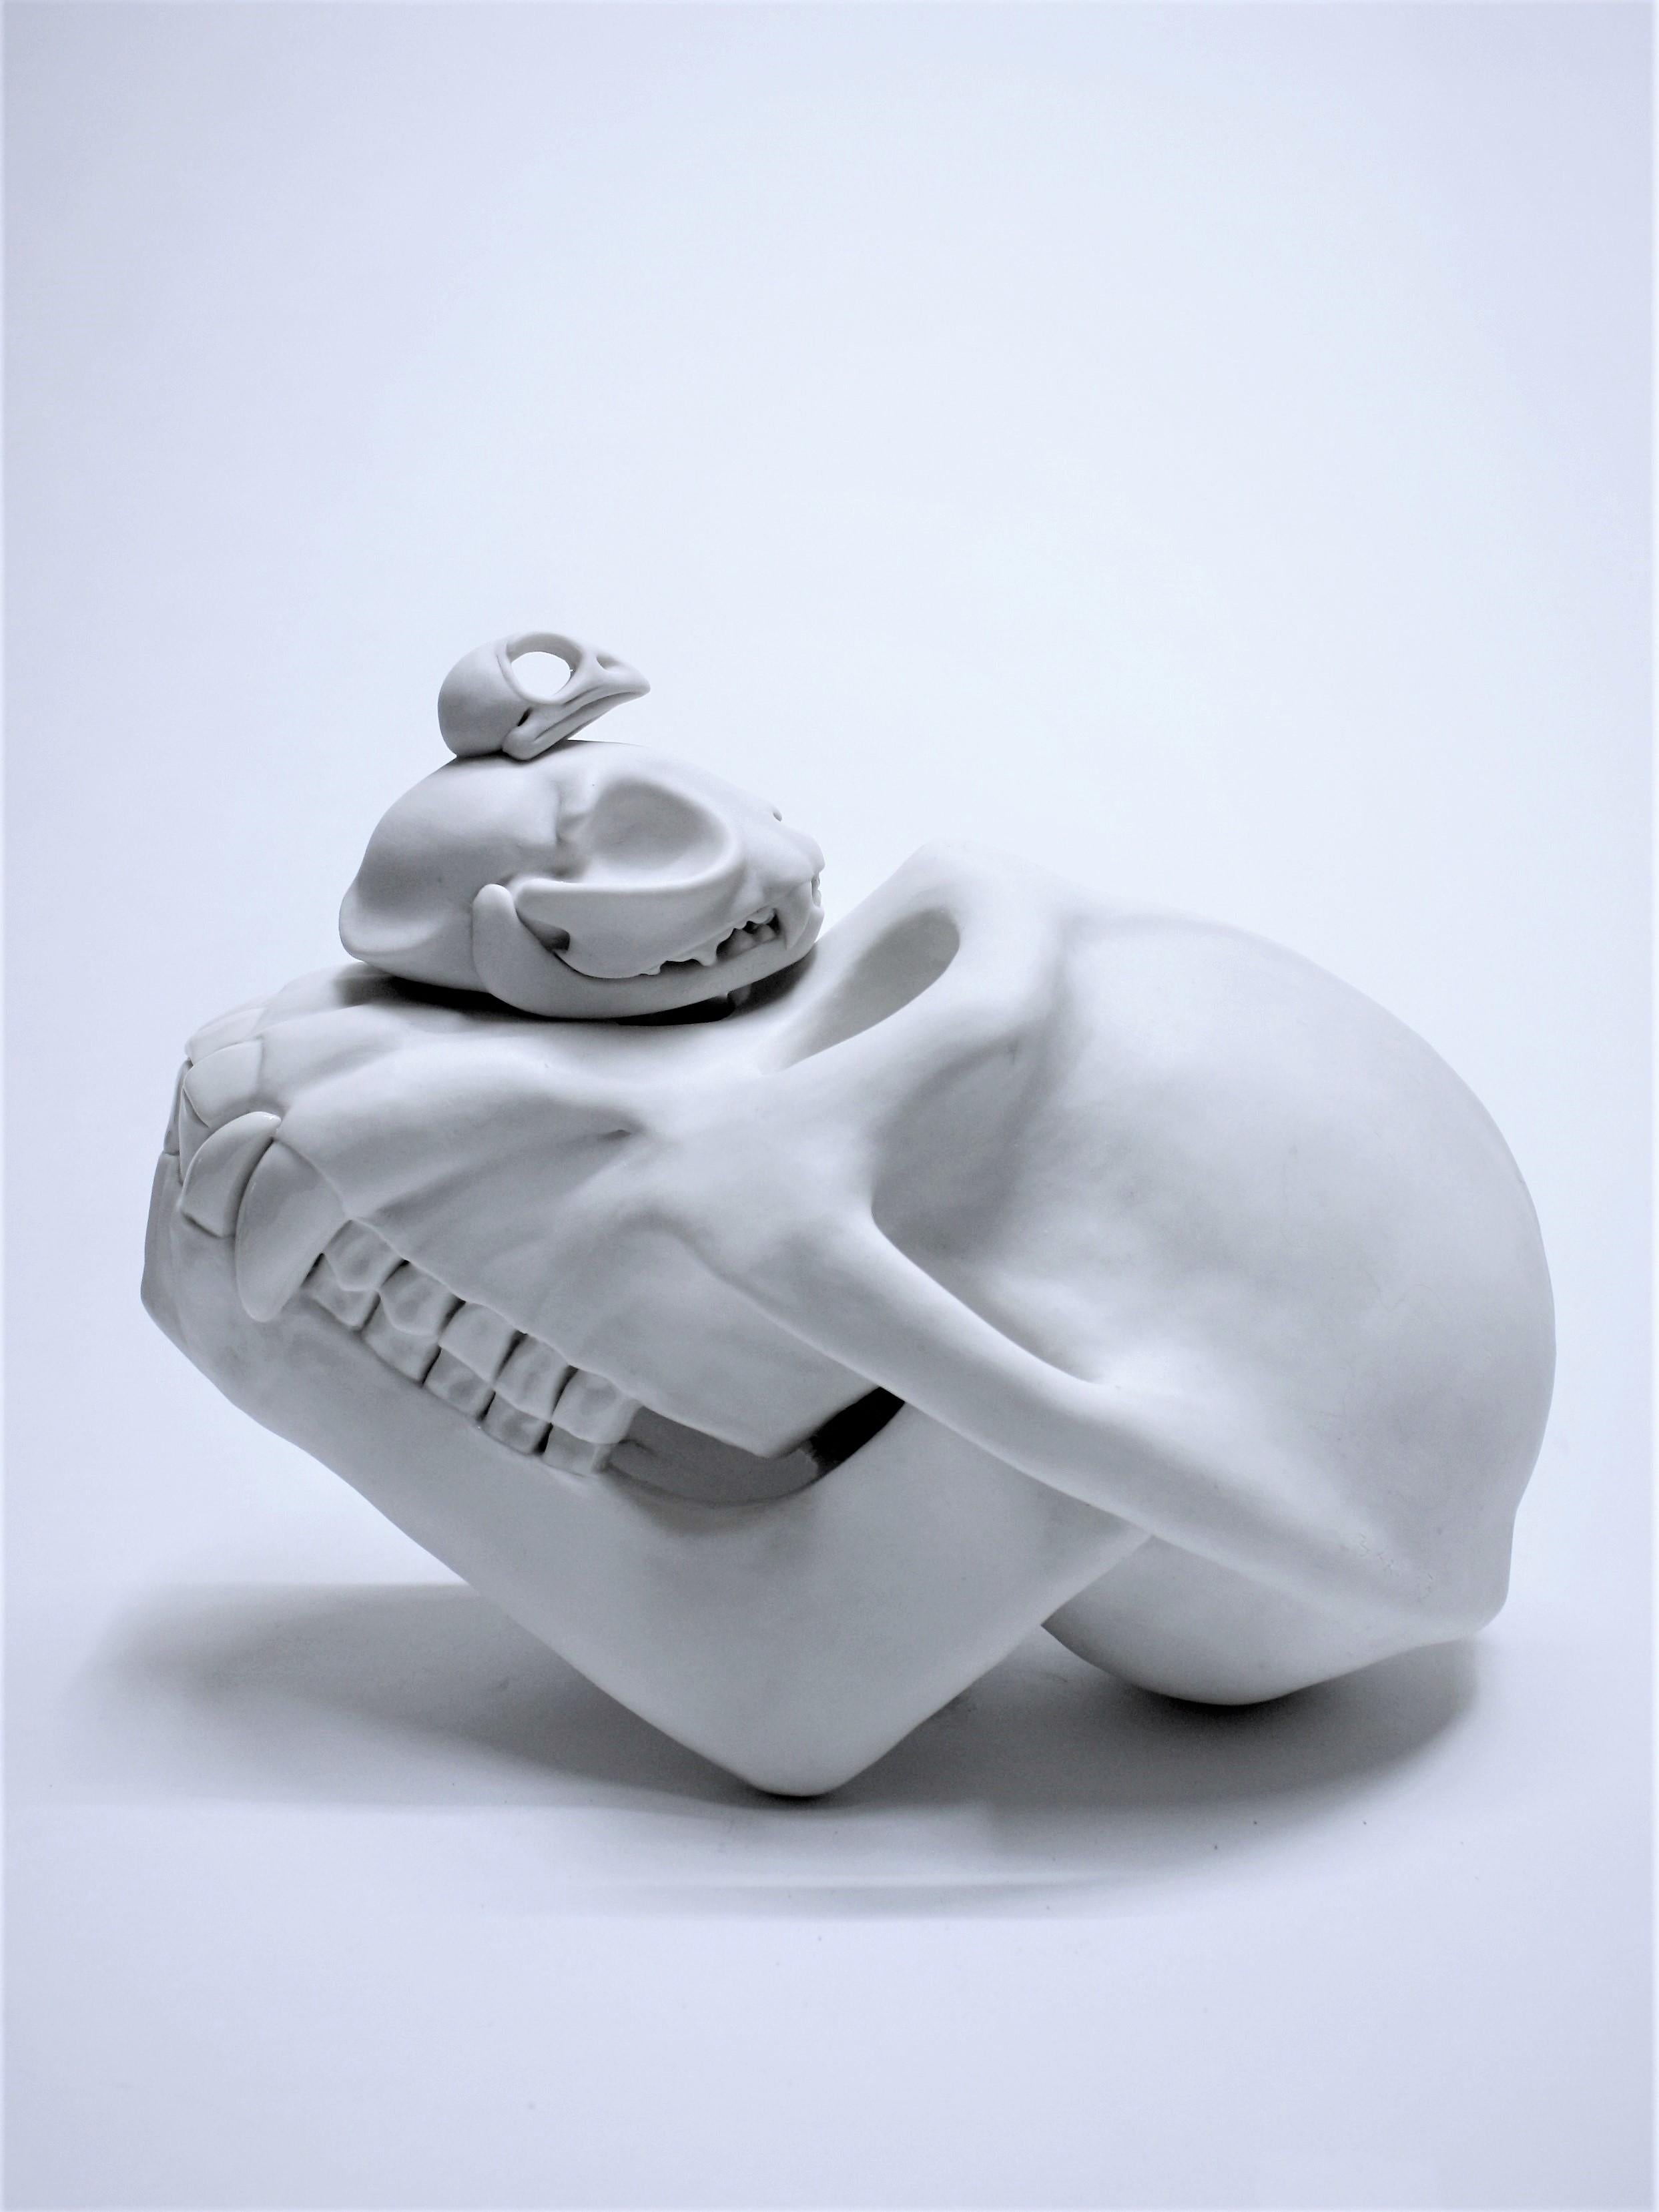 Sculpture en porcelaine contemporaine - Animaux crâne blanc - Bethany Krull - Artiste féminine